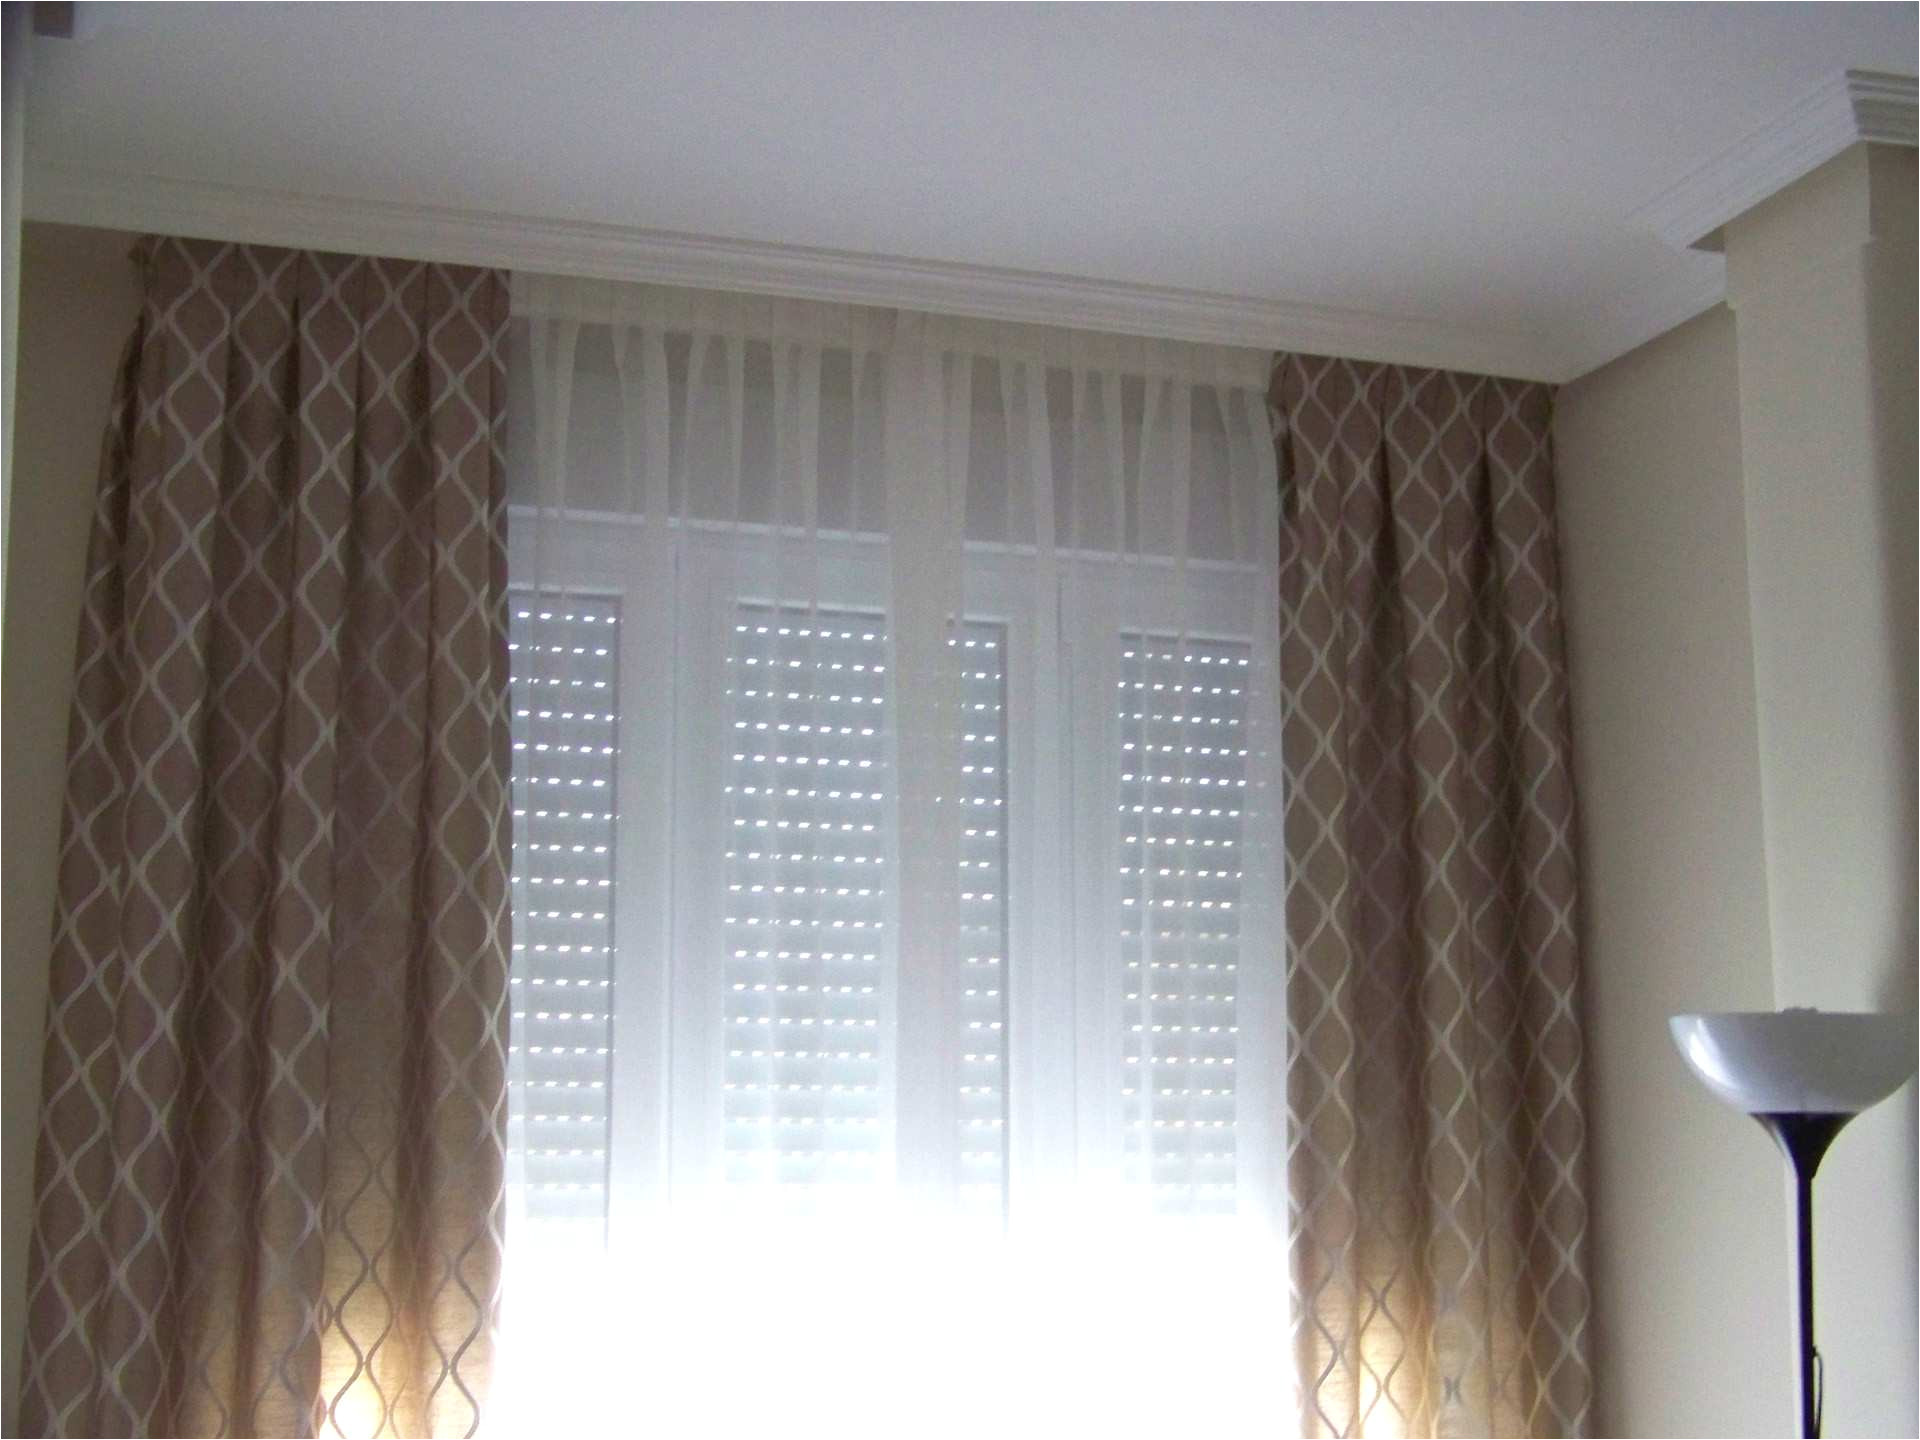 visillos cortinas lujo cortinas y visillos leroy merlin cortinas funcionales elegantes y of visillos cortinas agradable